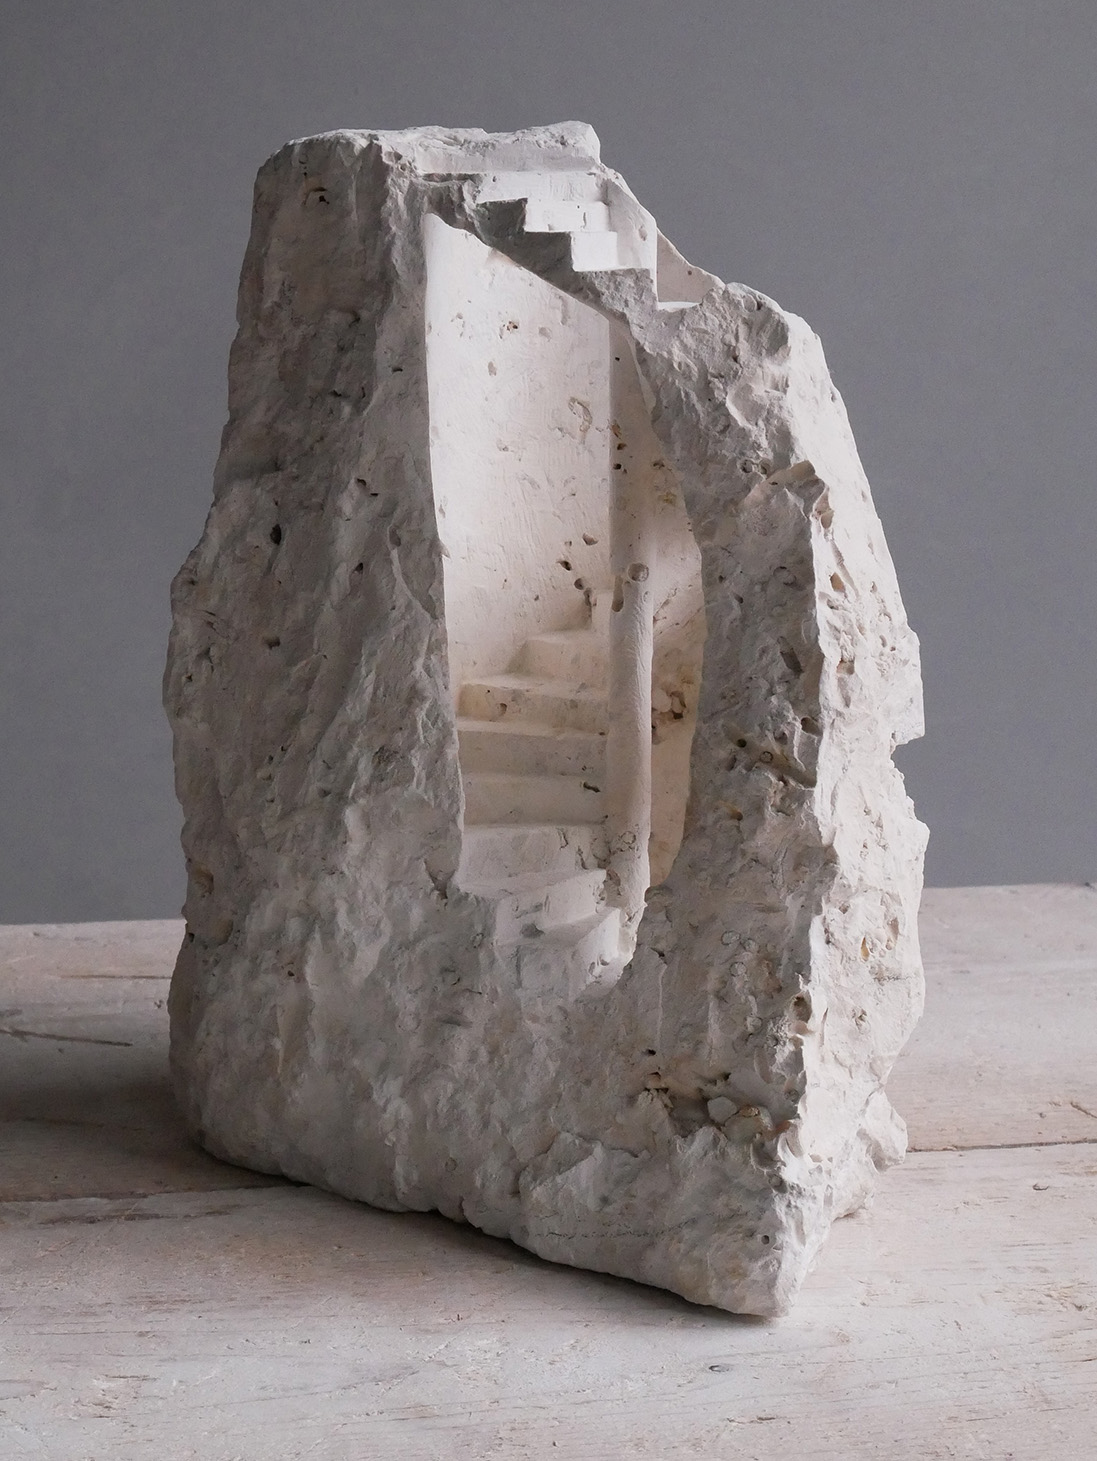 Com foco em arquitetura sagrada, o artista britânico recria edifícios em miniaturas de mármore